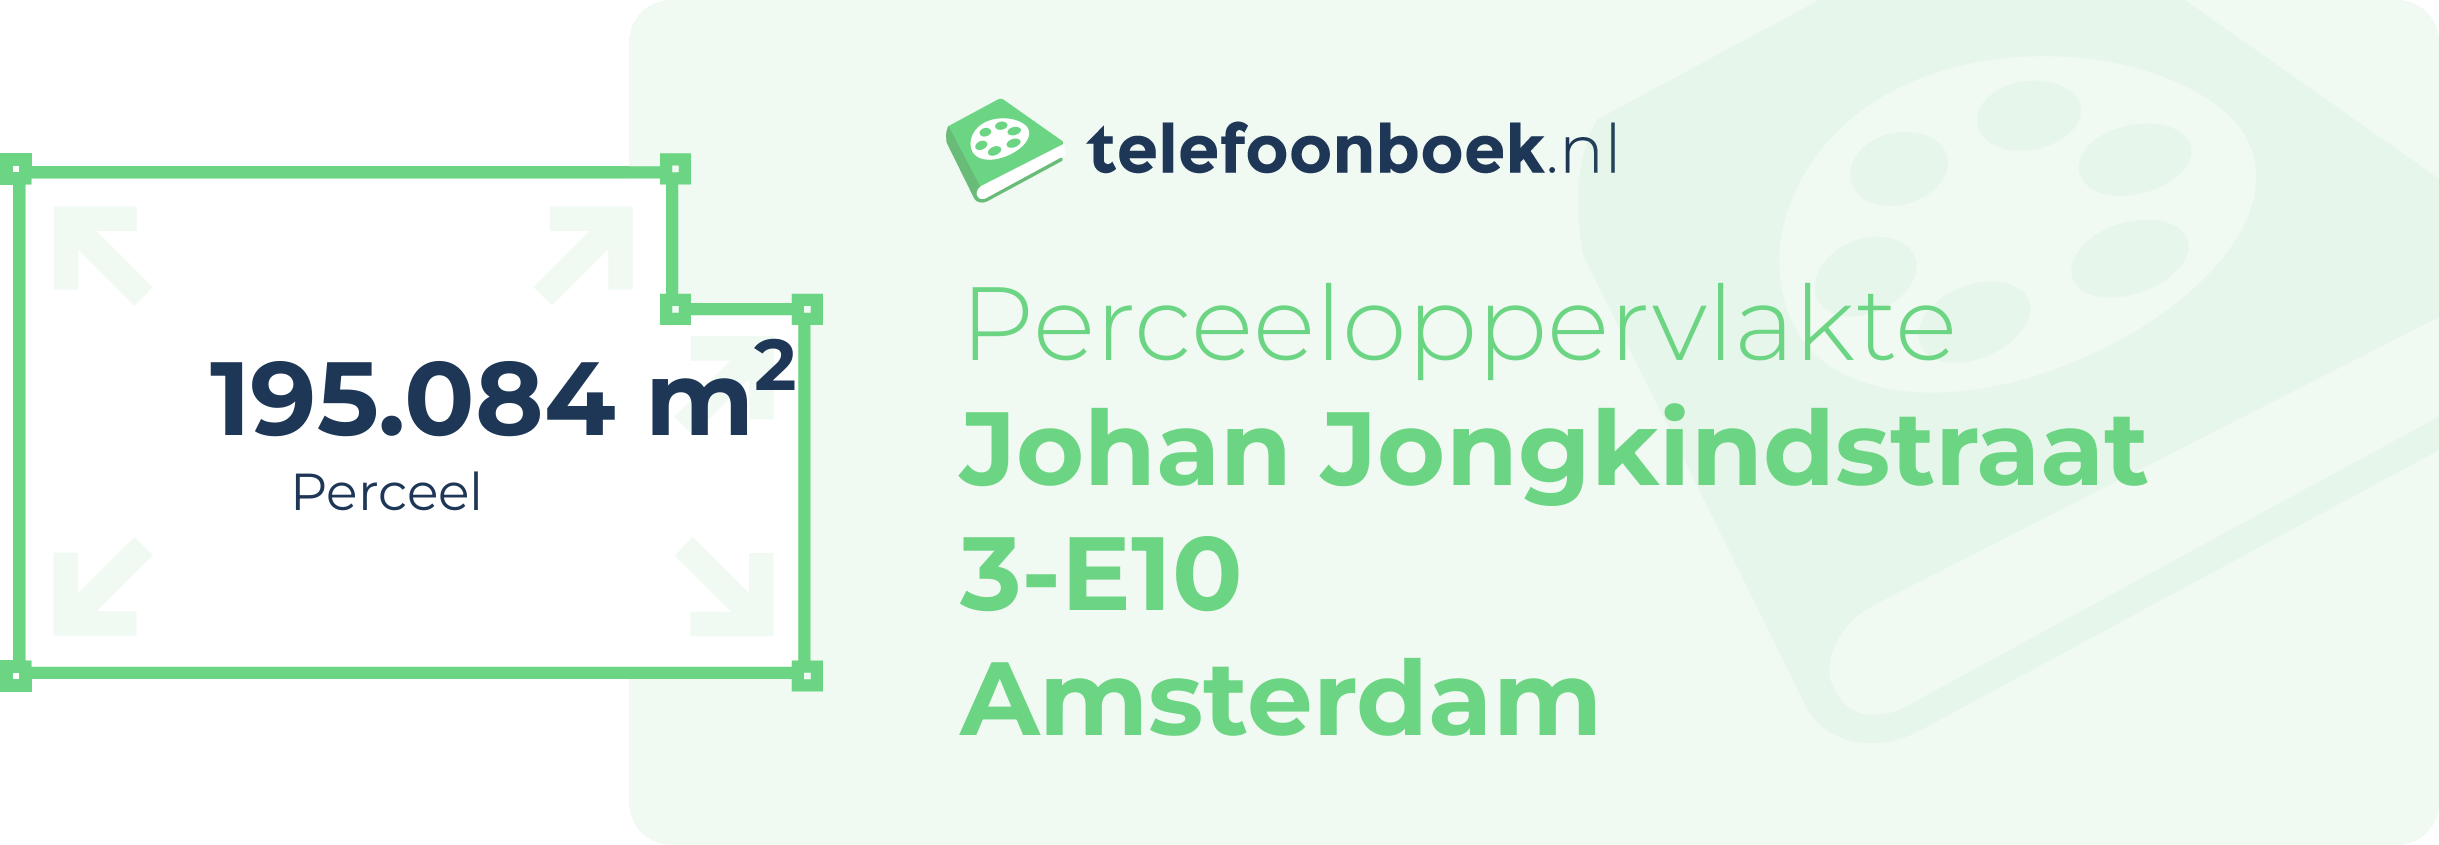 Perceeloppervlakte Johan Jongkindstraat 3-E10 Amsterdam